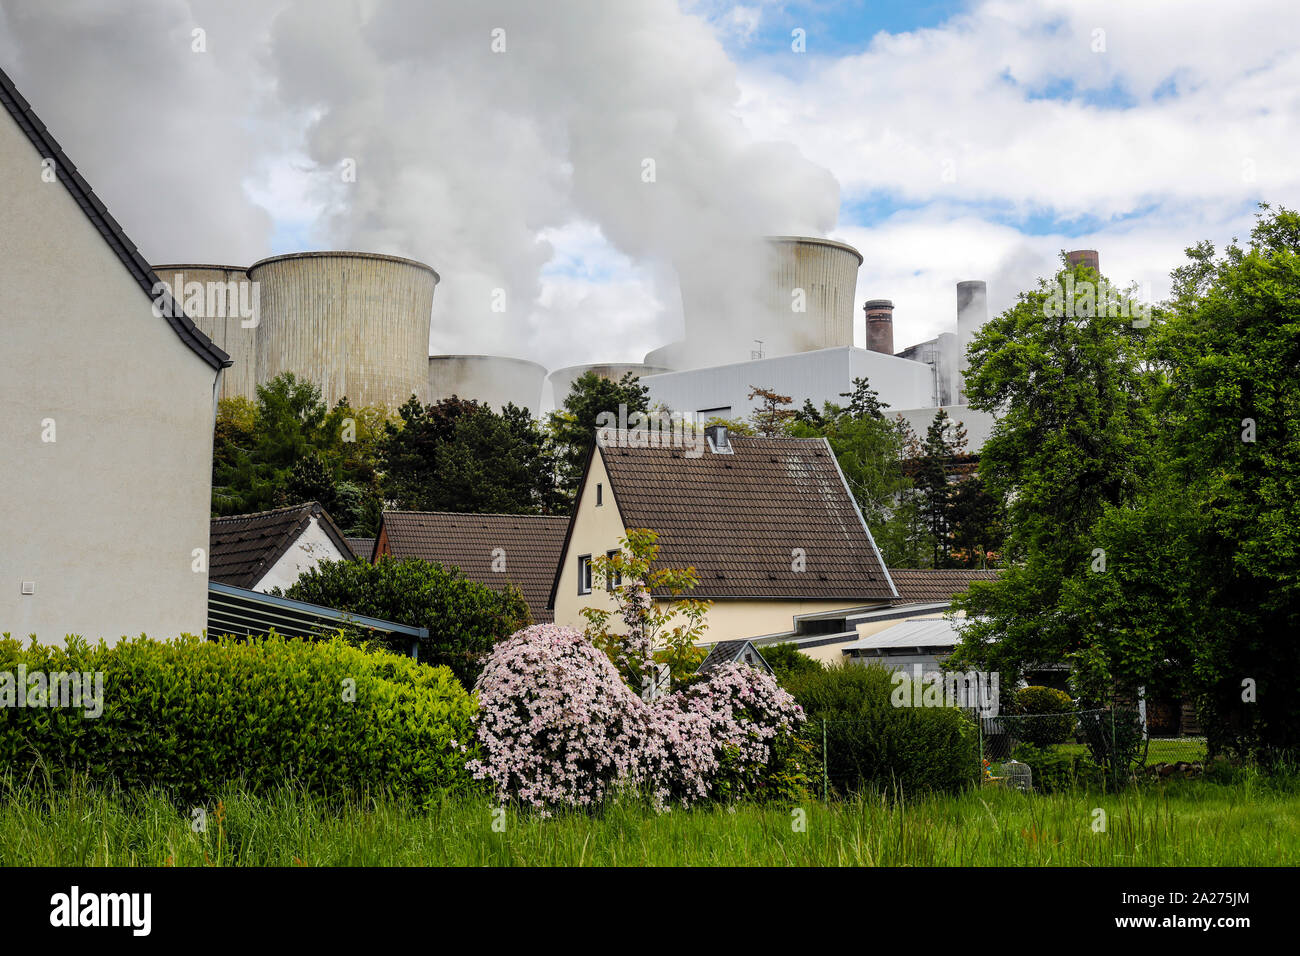 09.05.2019, Niederaussem, North Rhine-Westphalia, Germany - RWE power plant Niederaussem, residential buildings in front of RWE lignite-fired power pl Stock Photo